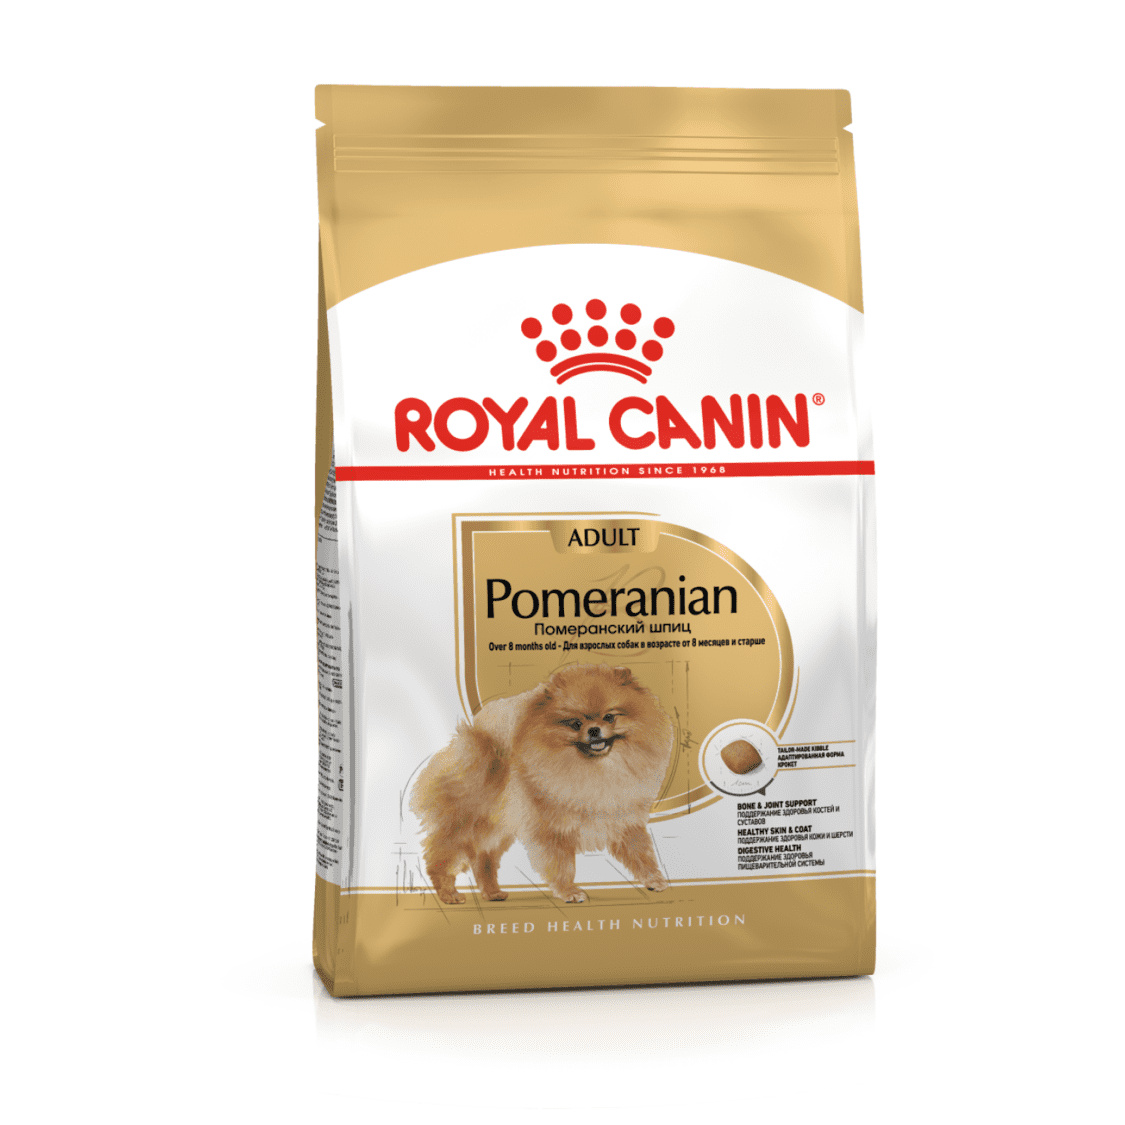 Royal Canin Корм Royal Canin корм для померанского шпица (1,5 кг)